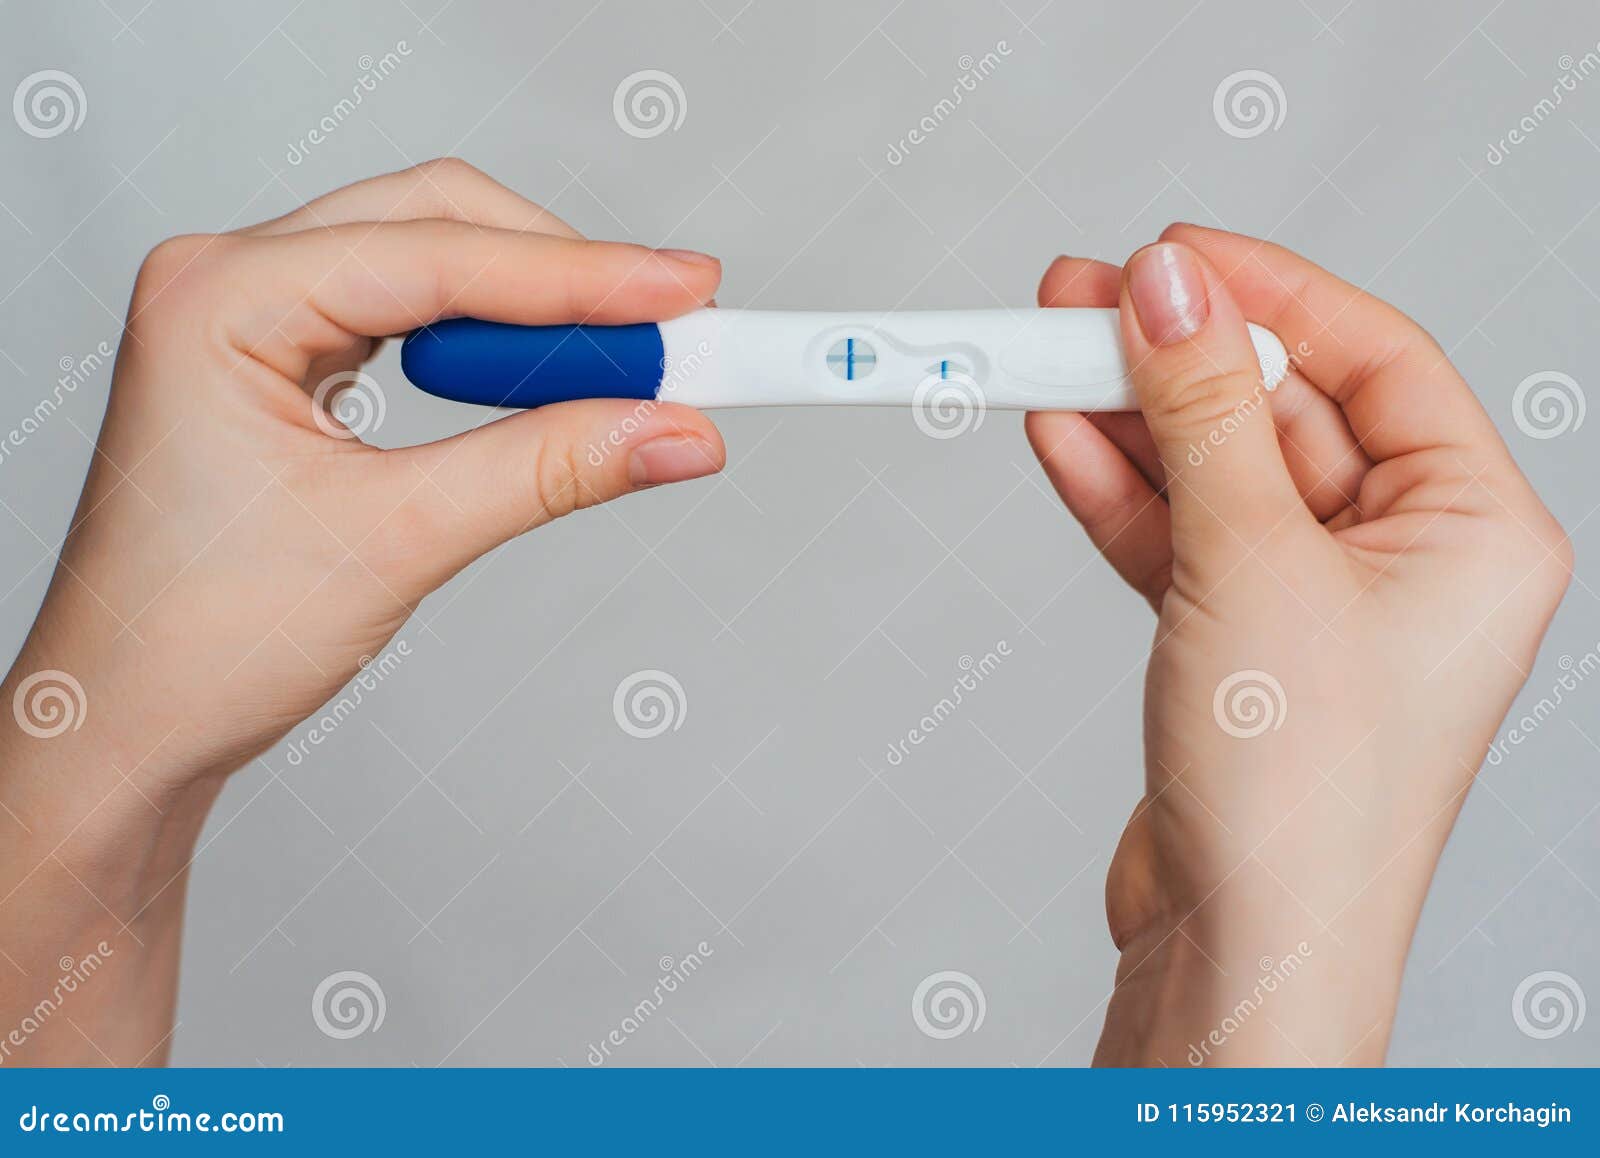 Градусник беременность. Тест 2 полоски в руке. Рука с тестом на беременность. Девушка с тестом на беременность в руках. Тест на беременность в руке.